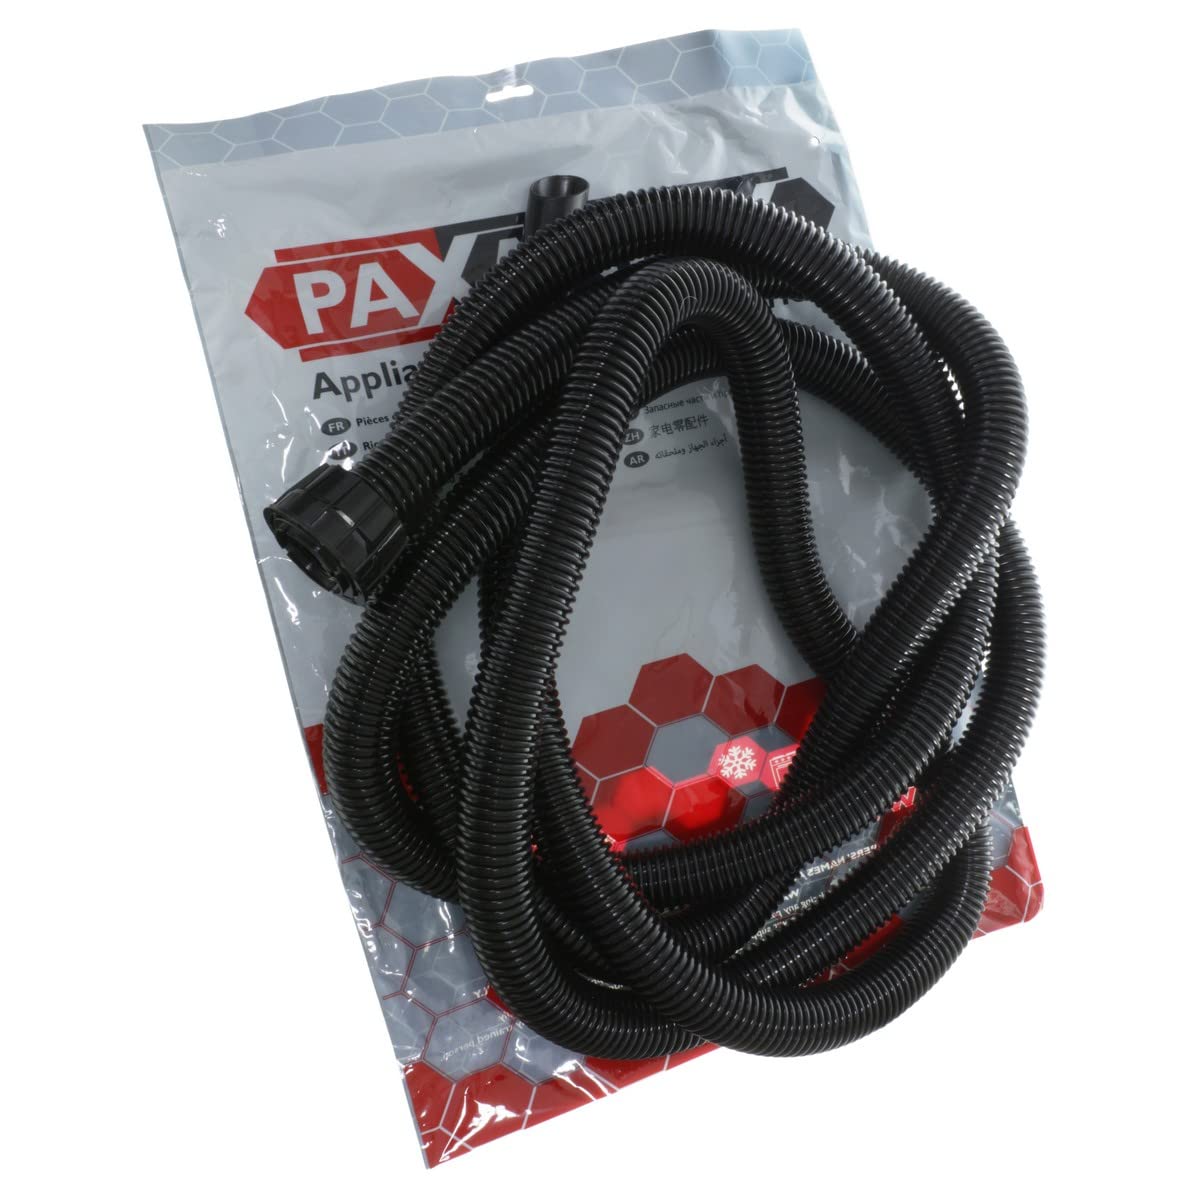 Paxanpax 35-NM-59 kompatibler Schlauch für Numatic (32 mm x 5 m), Kunststoff